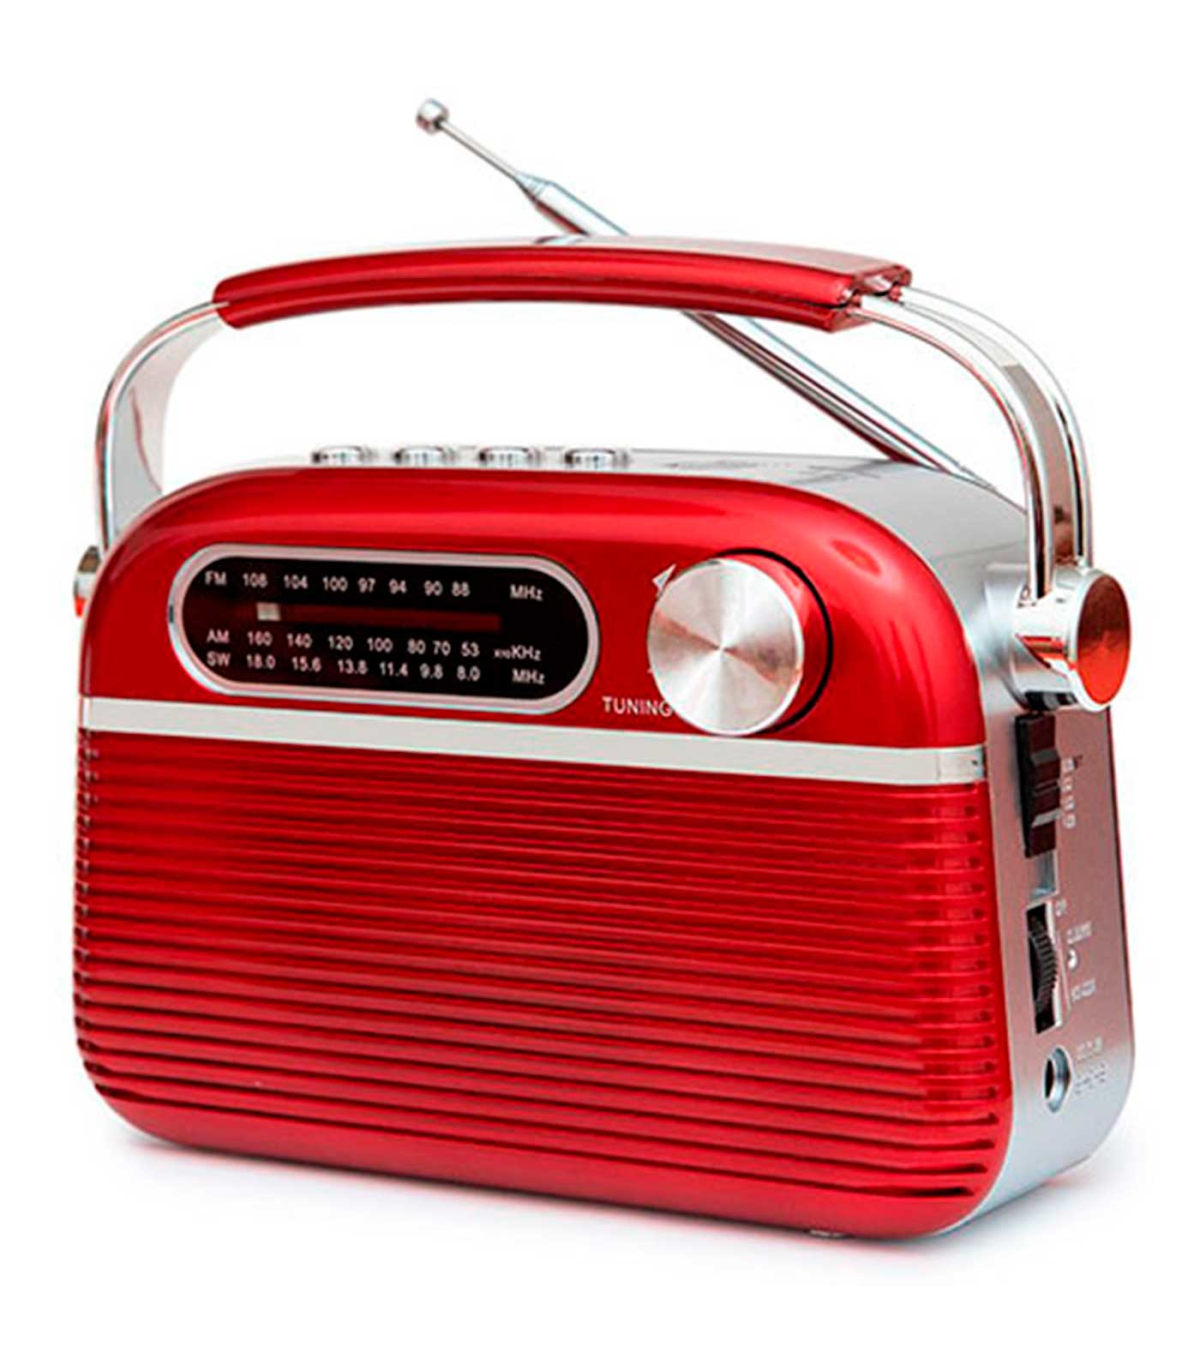 Soporte para Radios por Internet de Calm Radio - Modelos de Radio